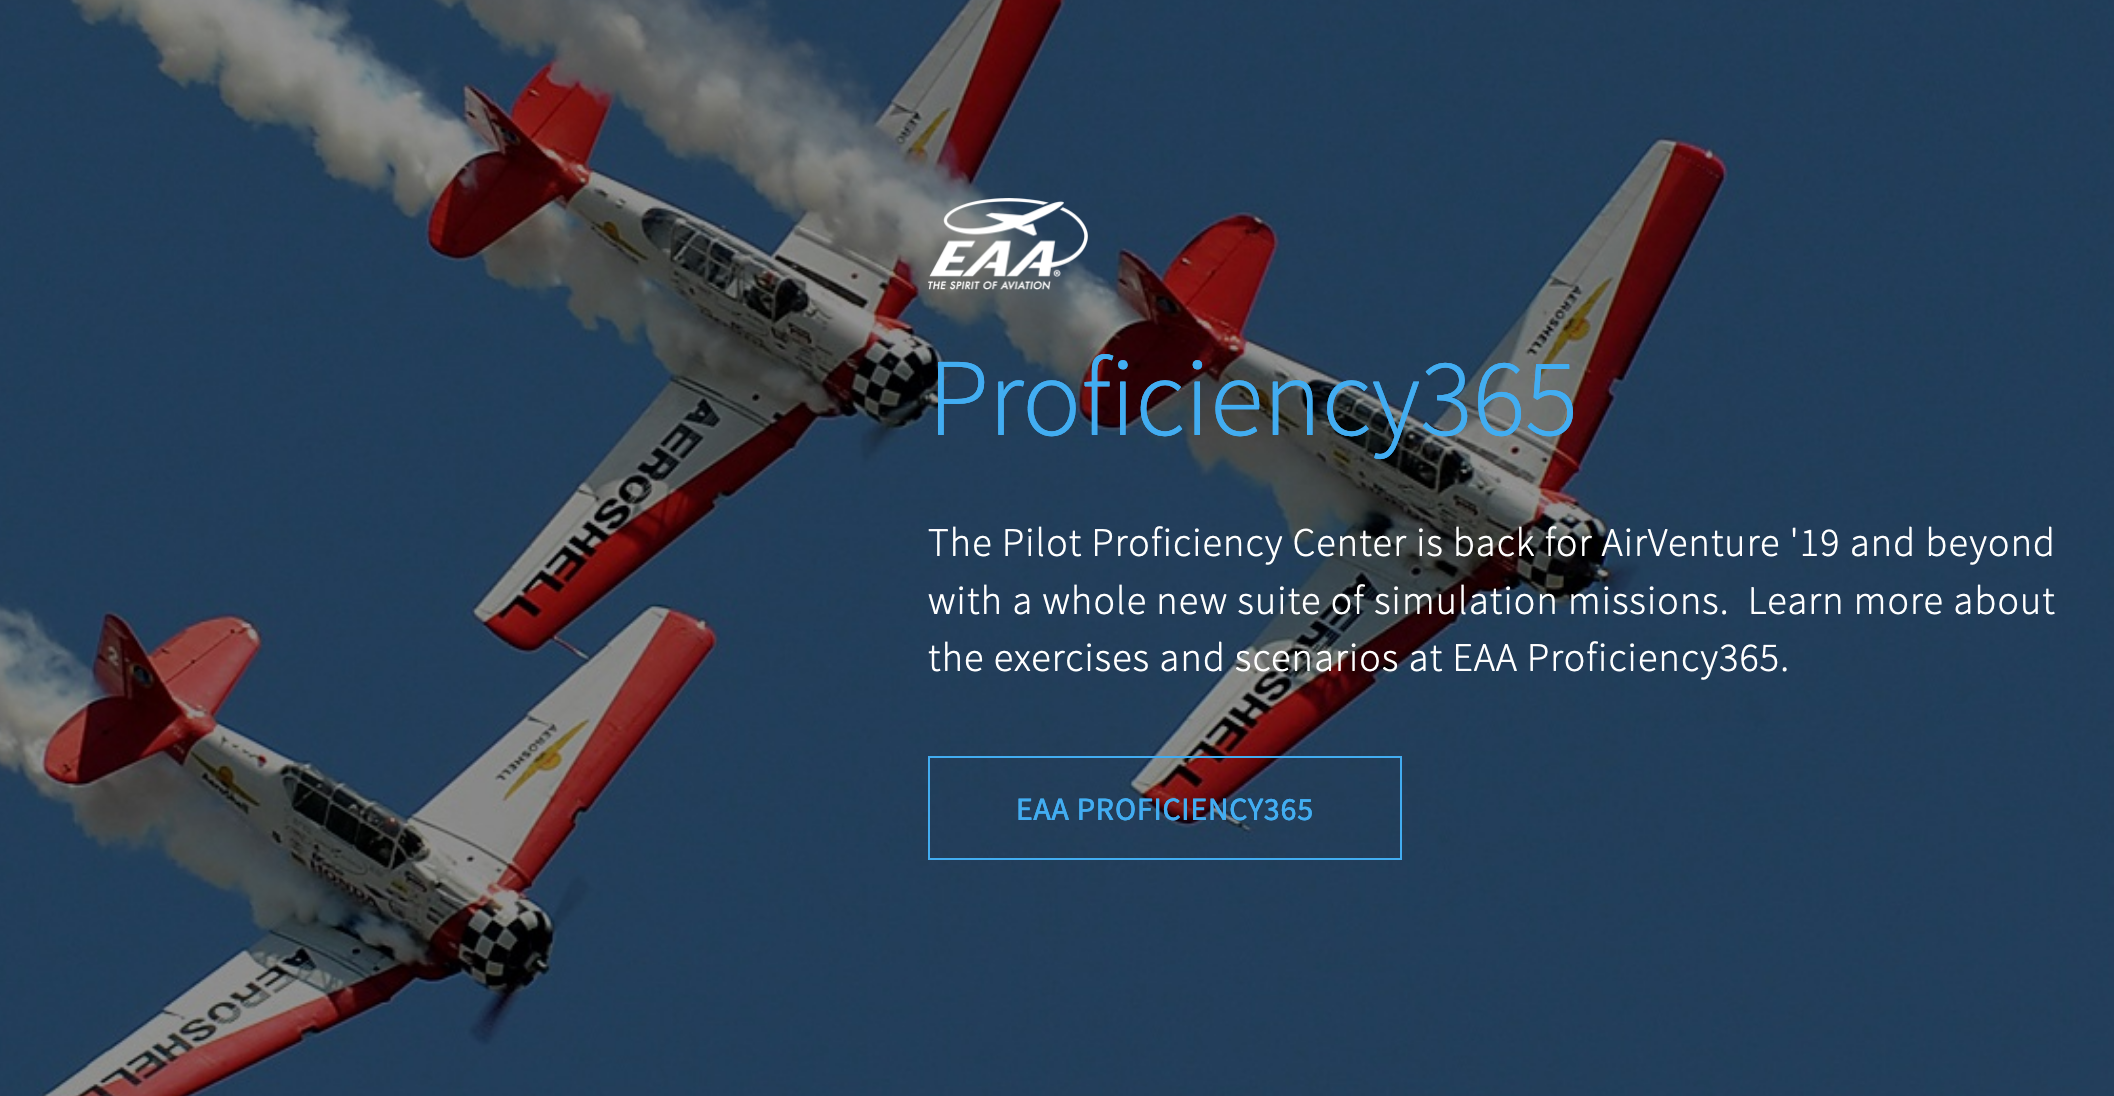 Proficiency365